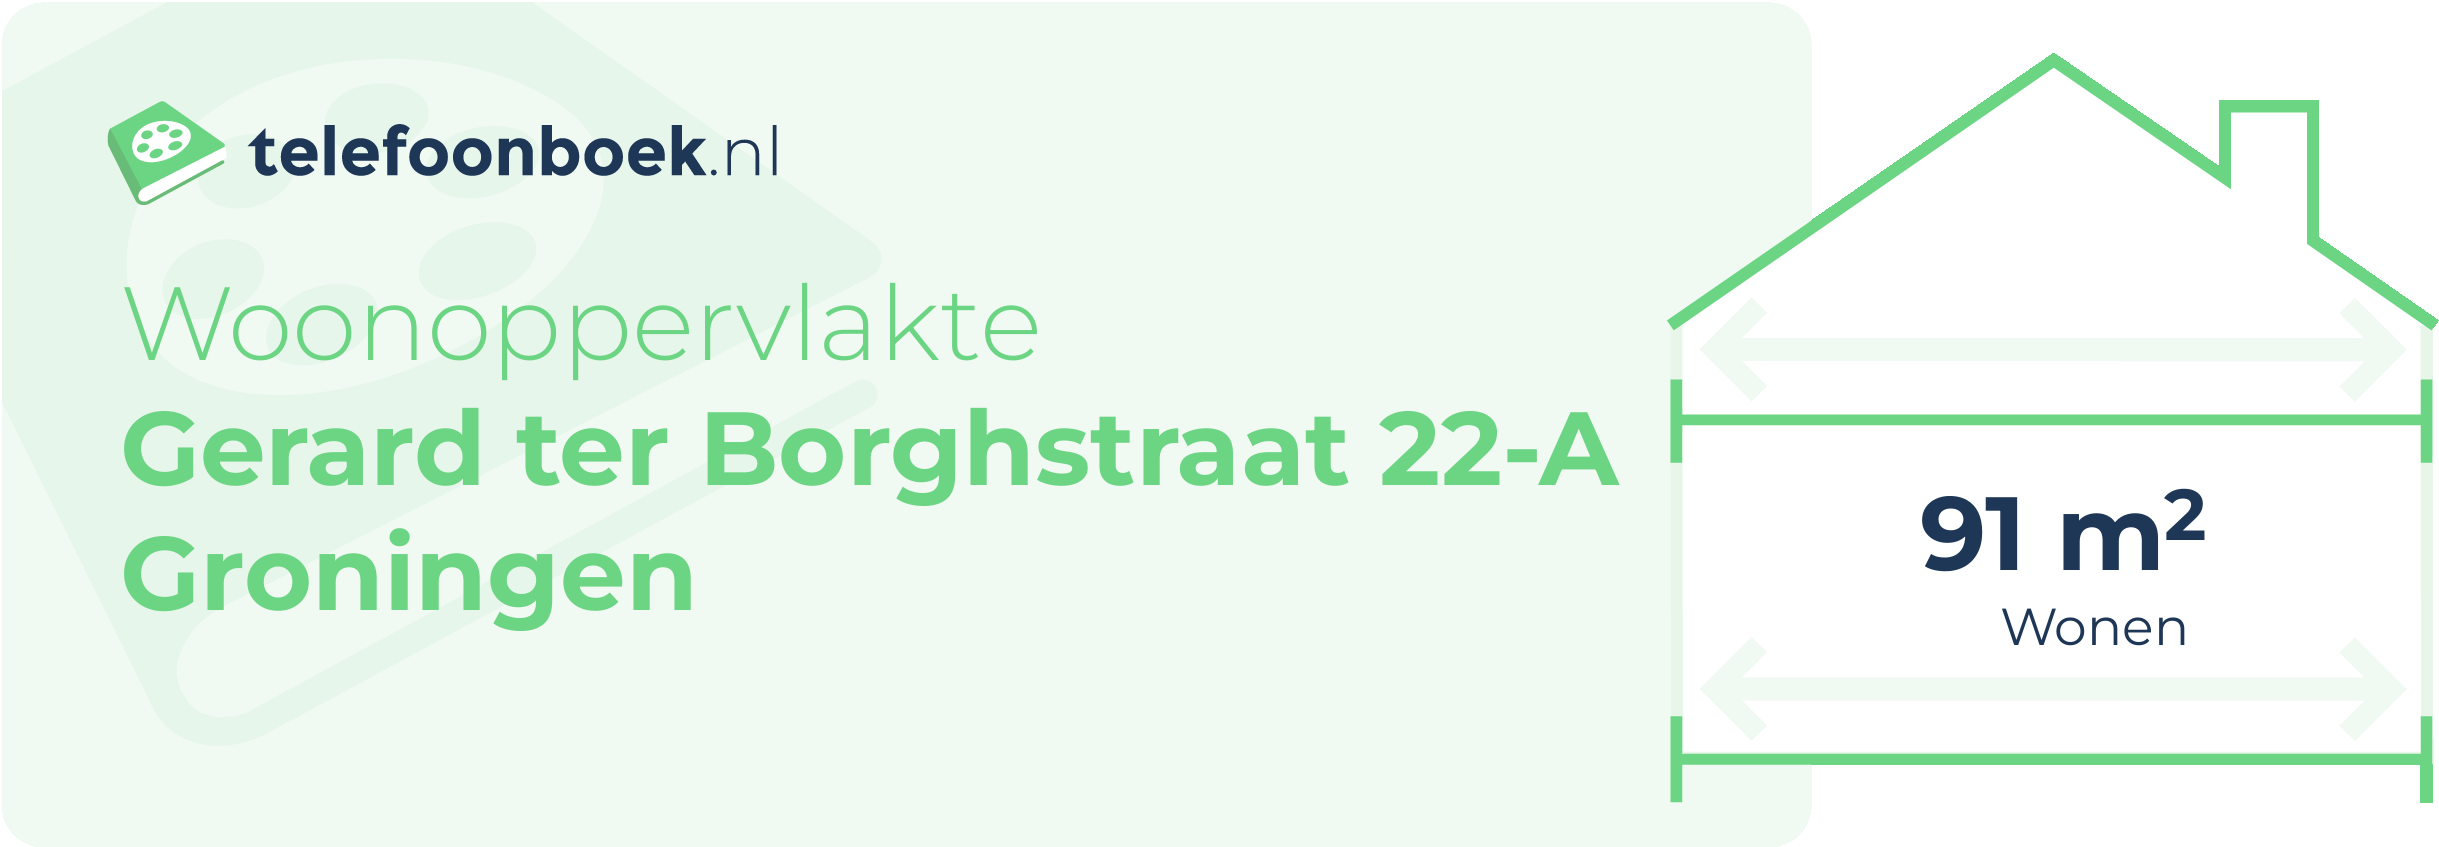 Woonoppervlakte Gerard Ter Borghstraat 22-A Groningen